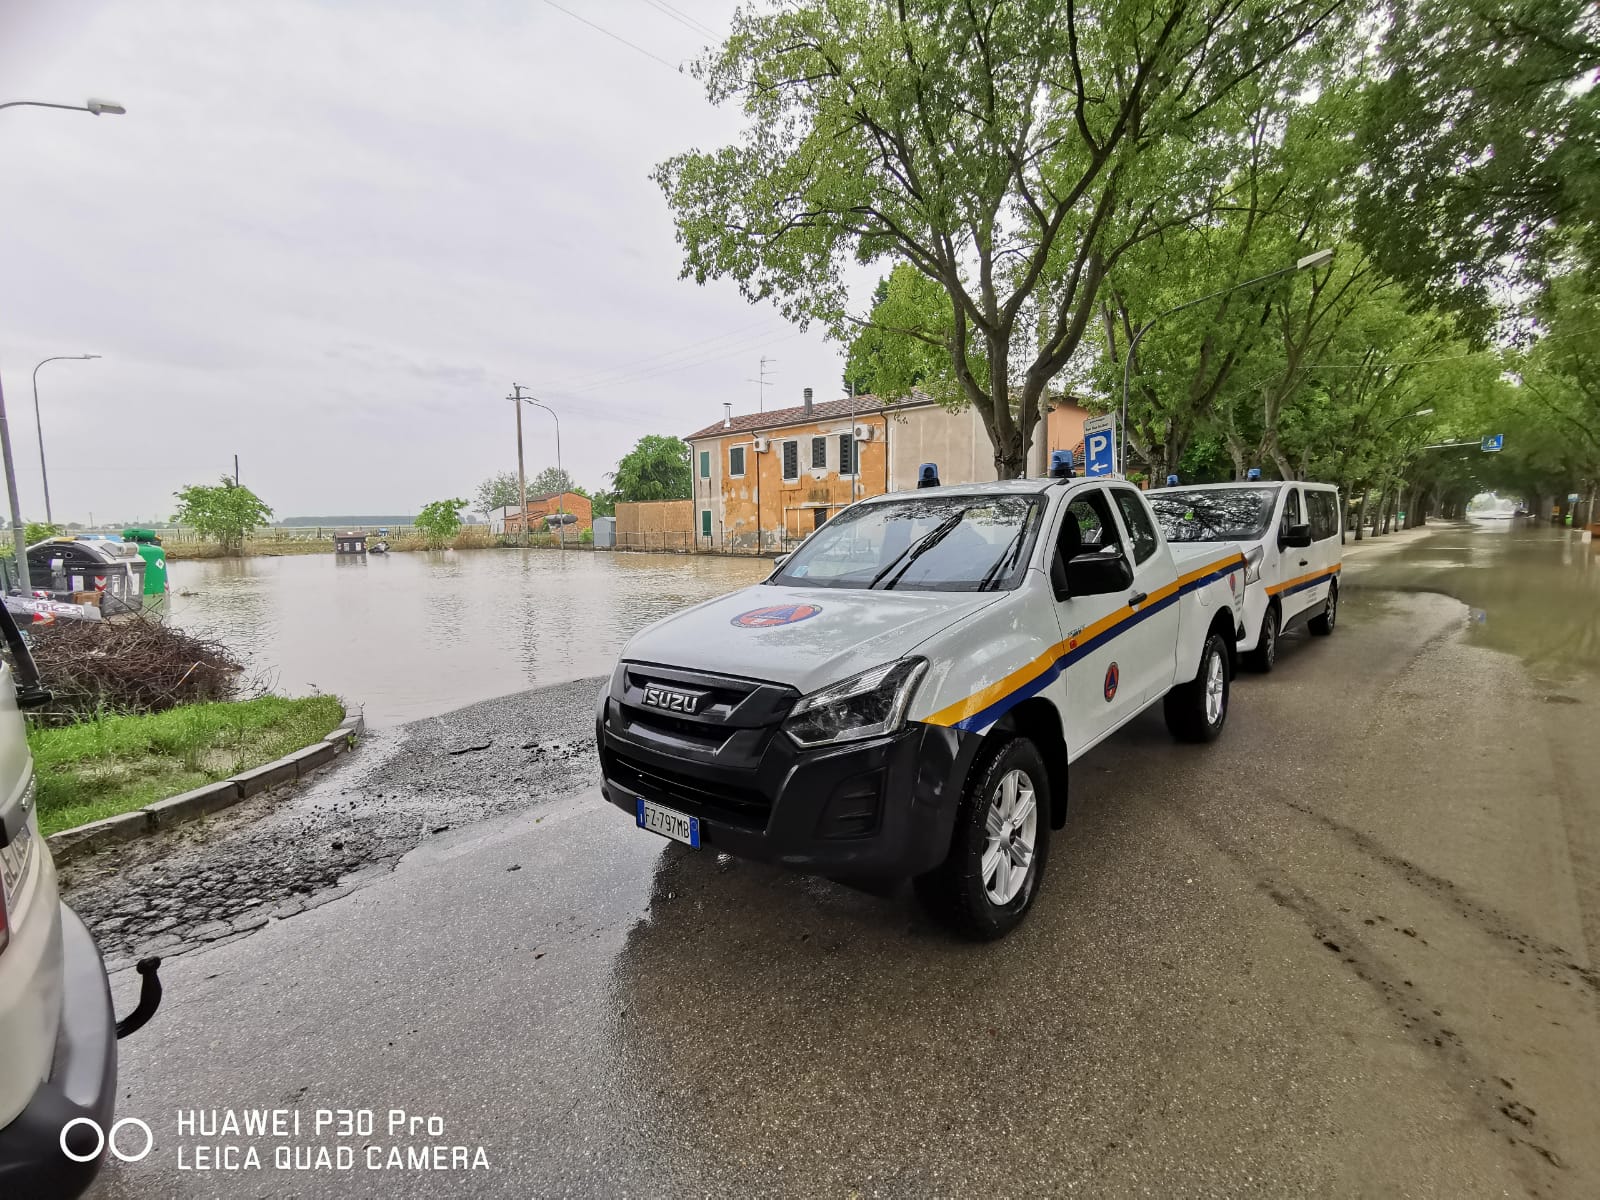 Alluvione in Emilia Romagna, la Protezione Civile ligure è ad Imola: sopralluogo prima del via alle operazioni